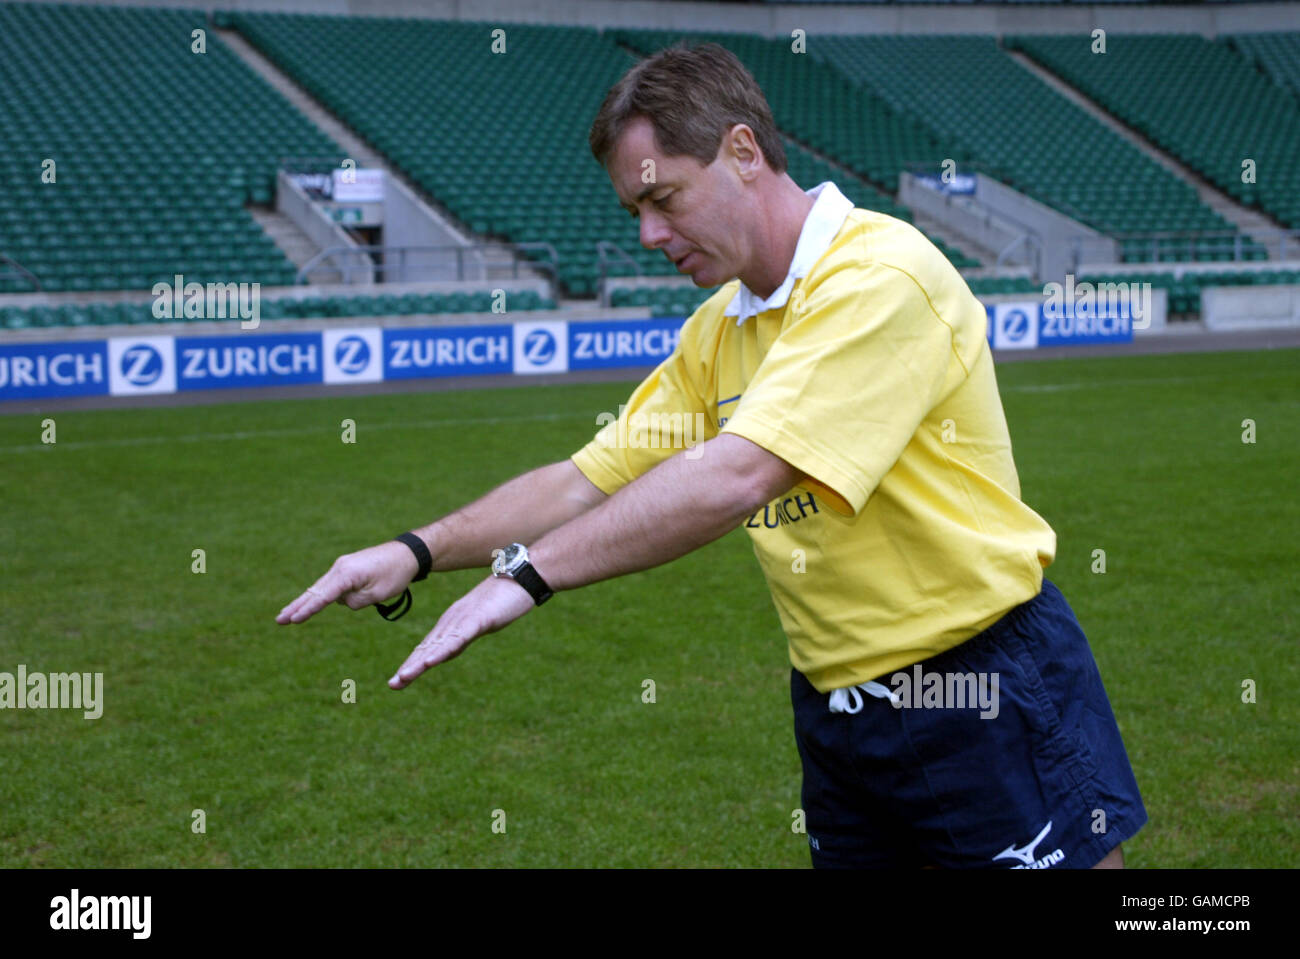 Rugby Union, Referee Signals. Caer voluntariamente sobre un jugador Foto de stock